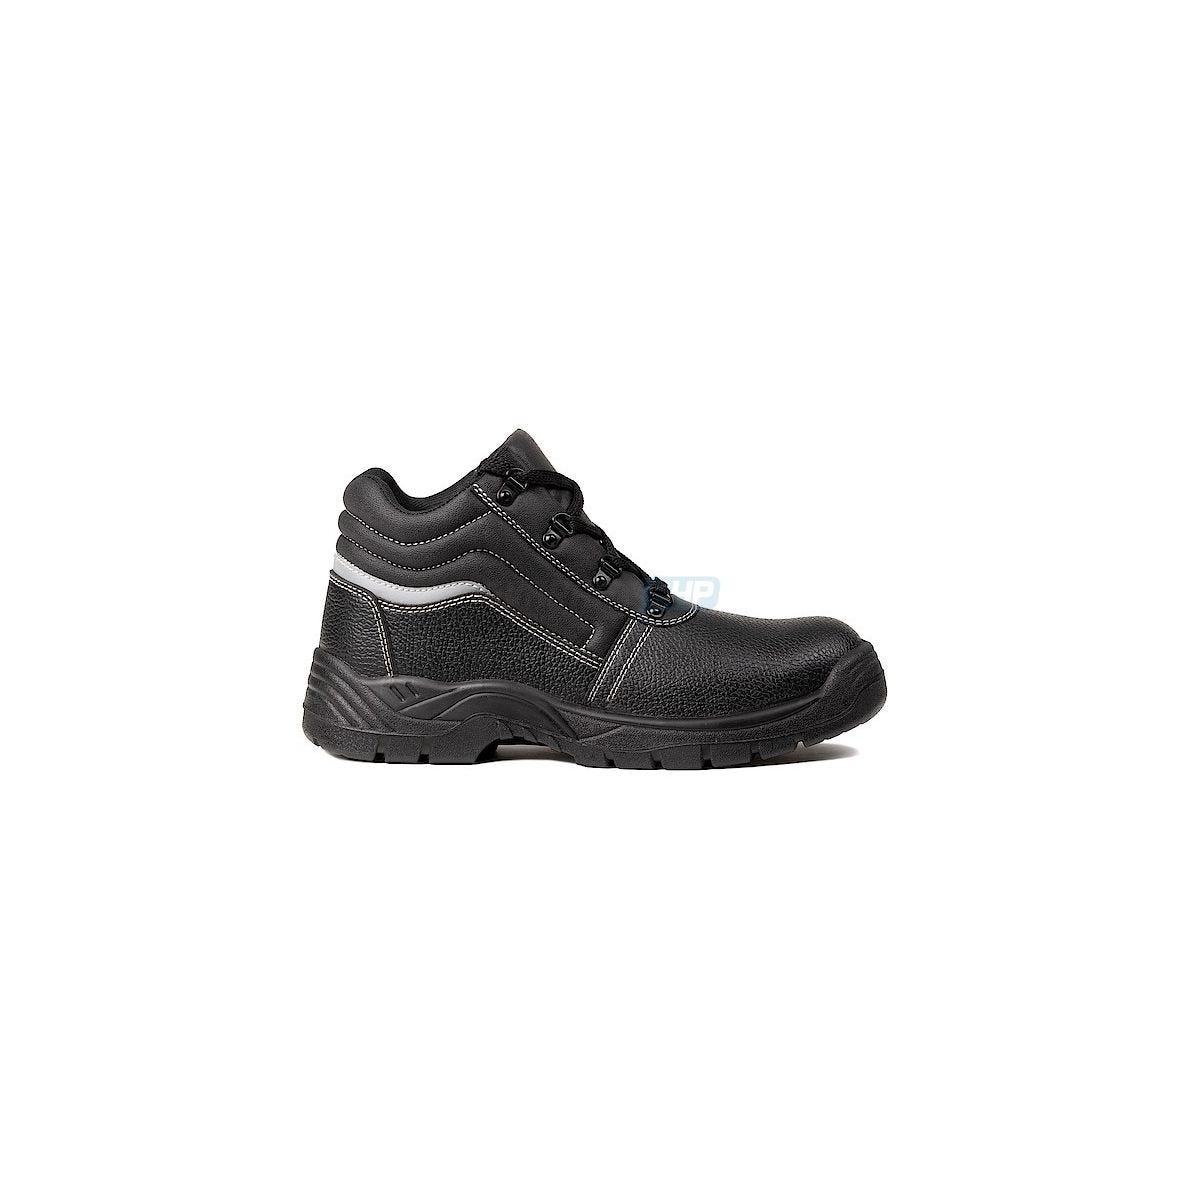 Chaussures de sécurité NACRITE S1P Haute Noir - COVERGUARD - Taille 45 0